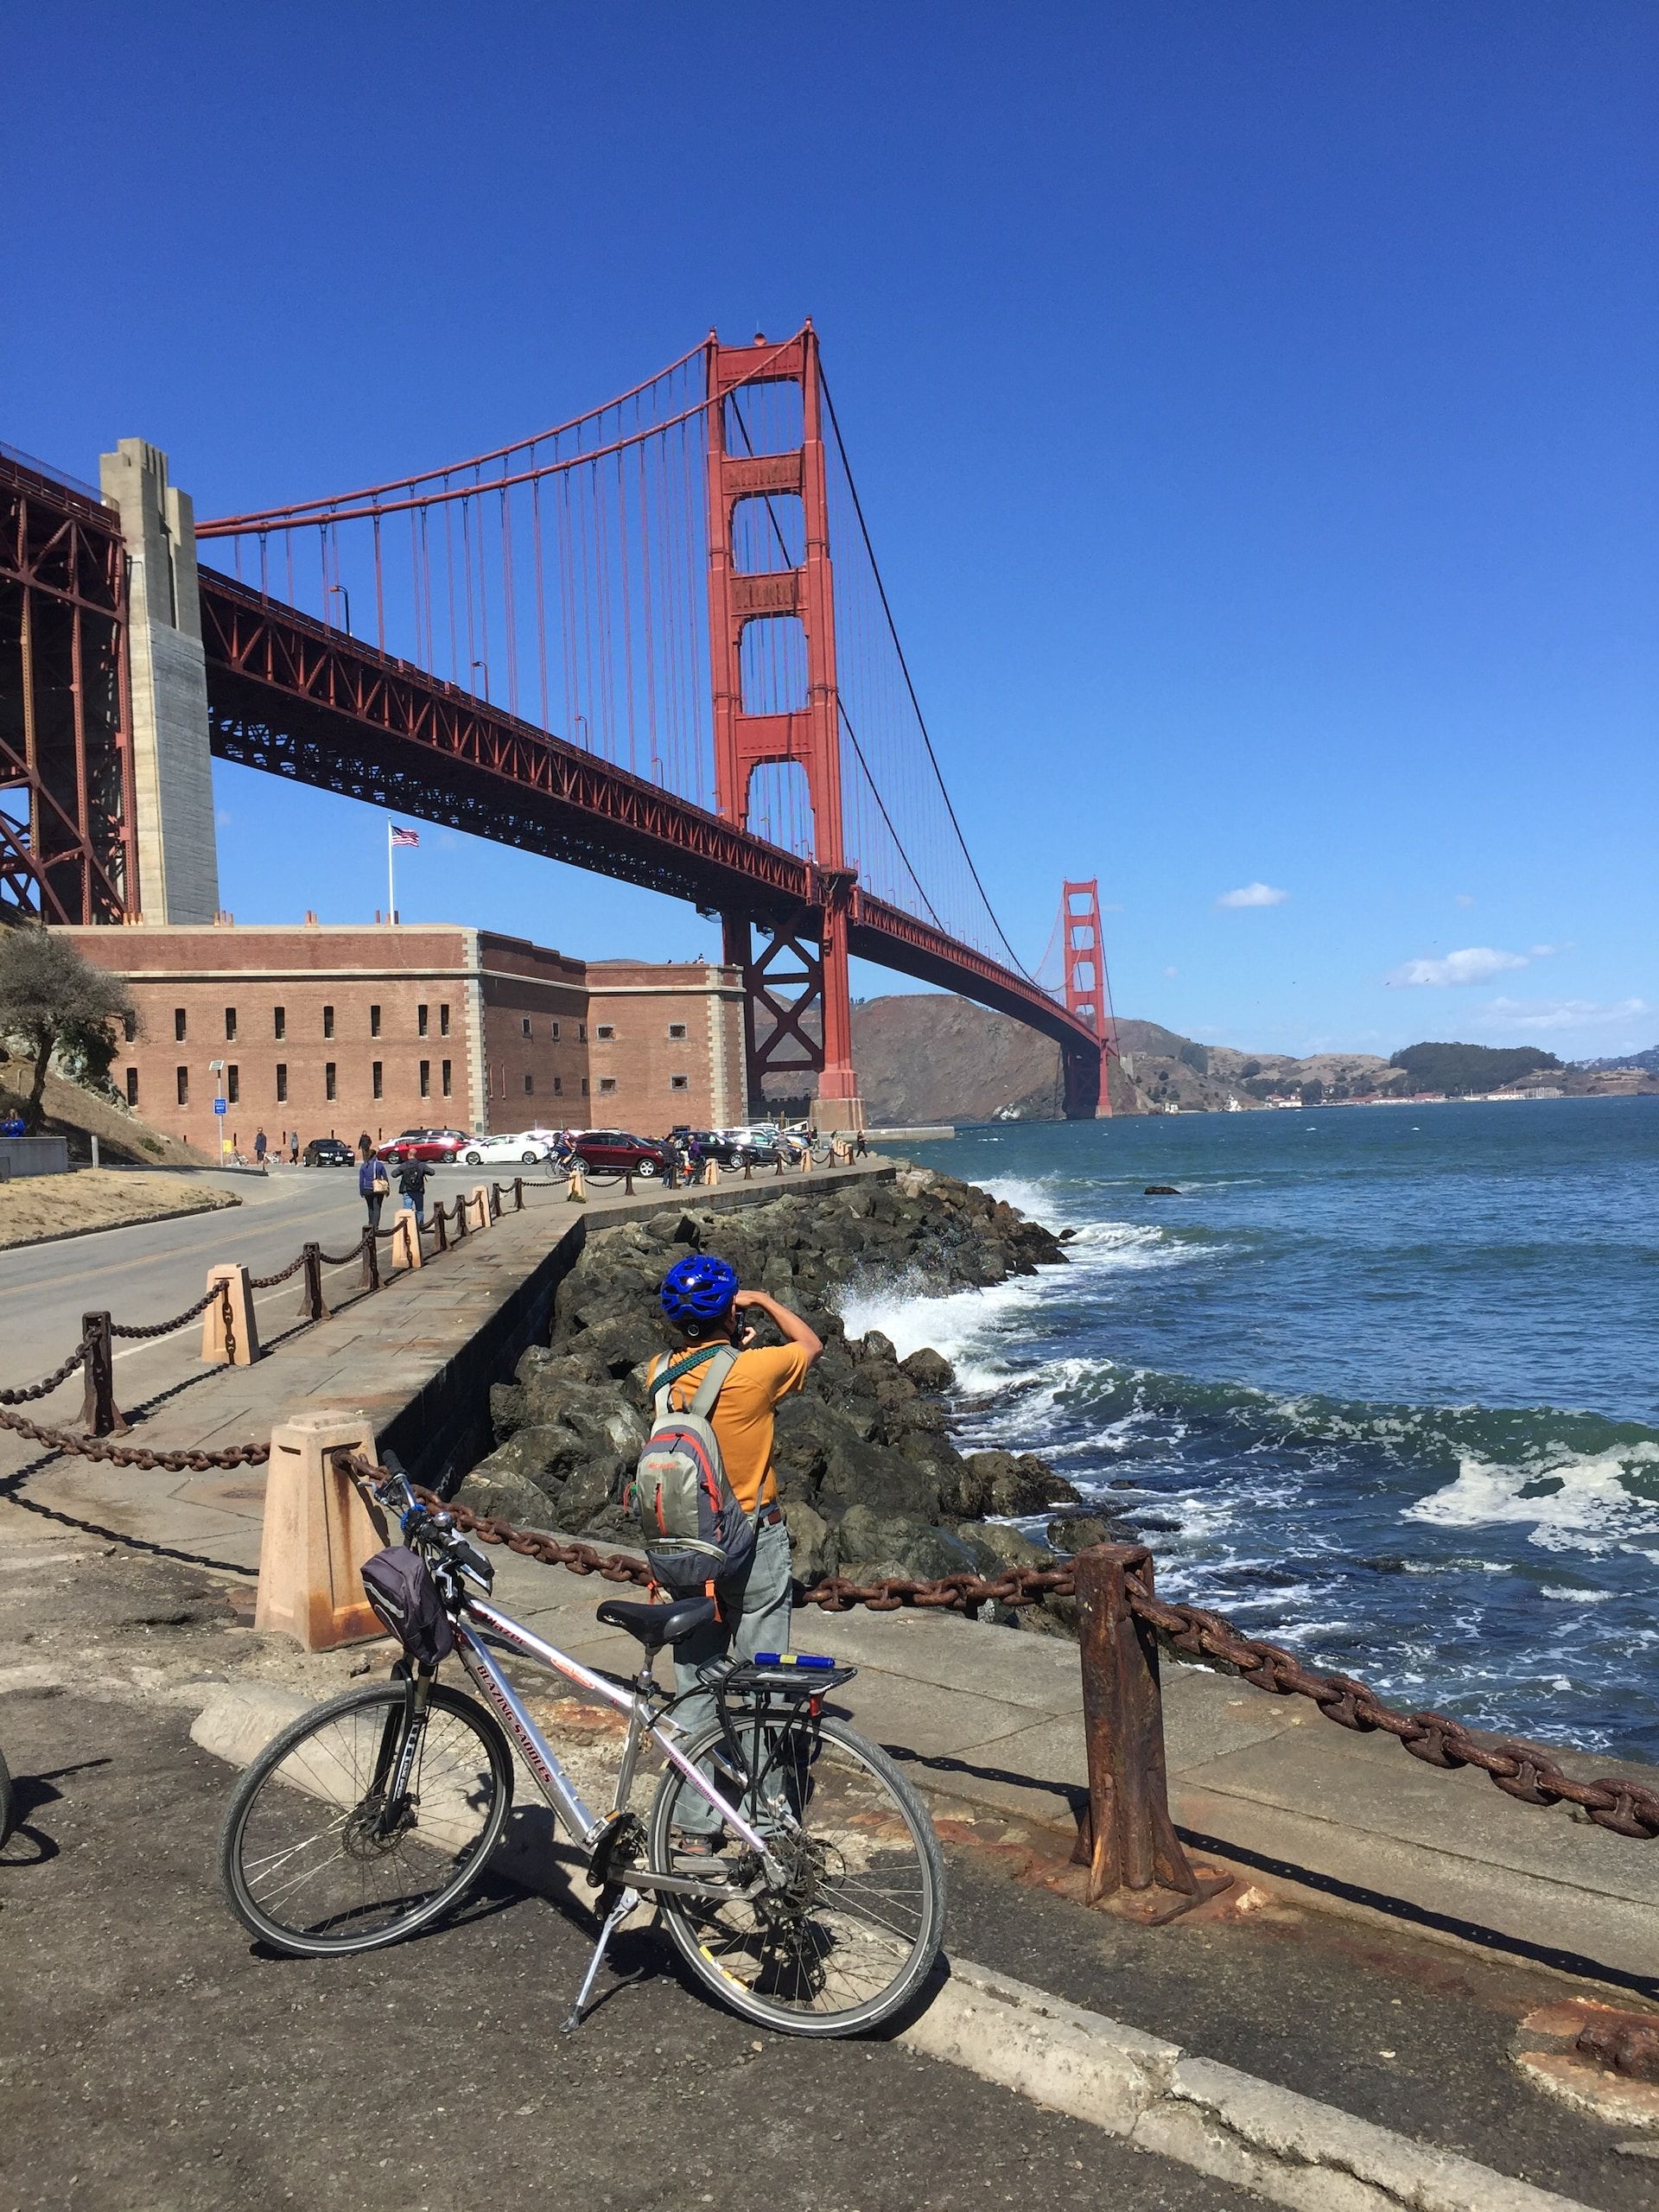 A cyclist taking a photo near the Golden Gate Bridge in SF